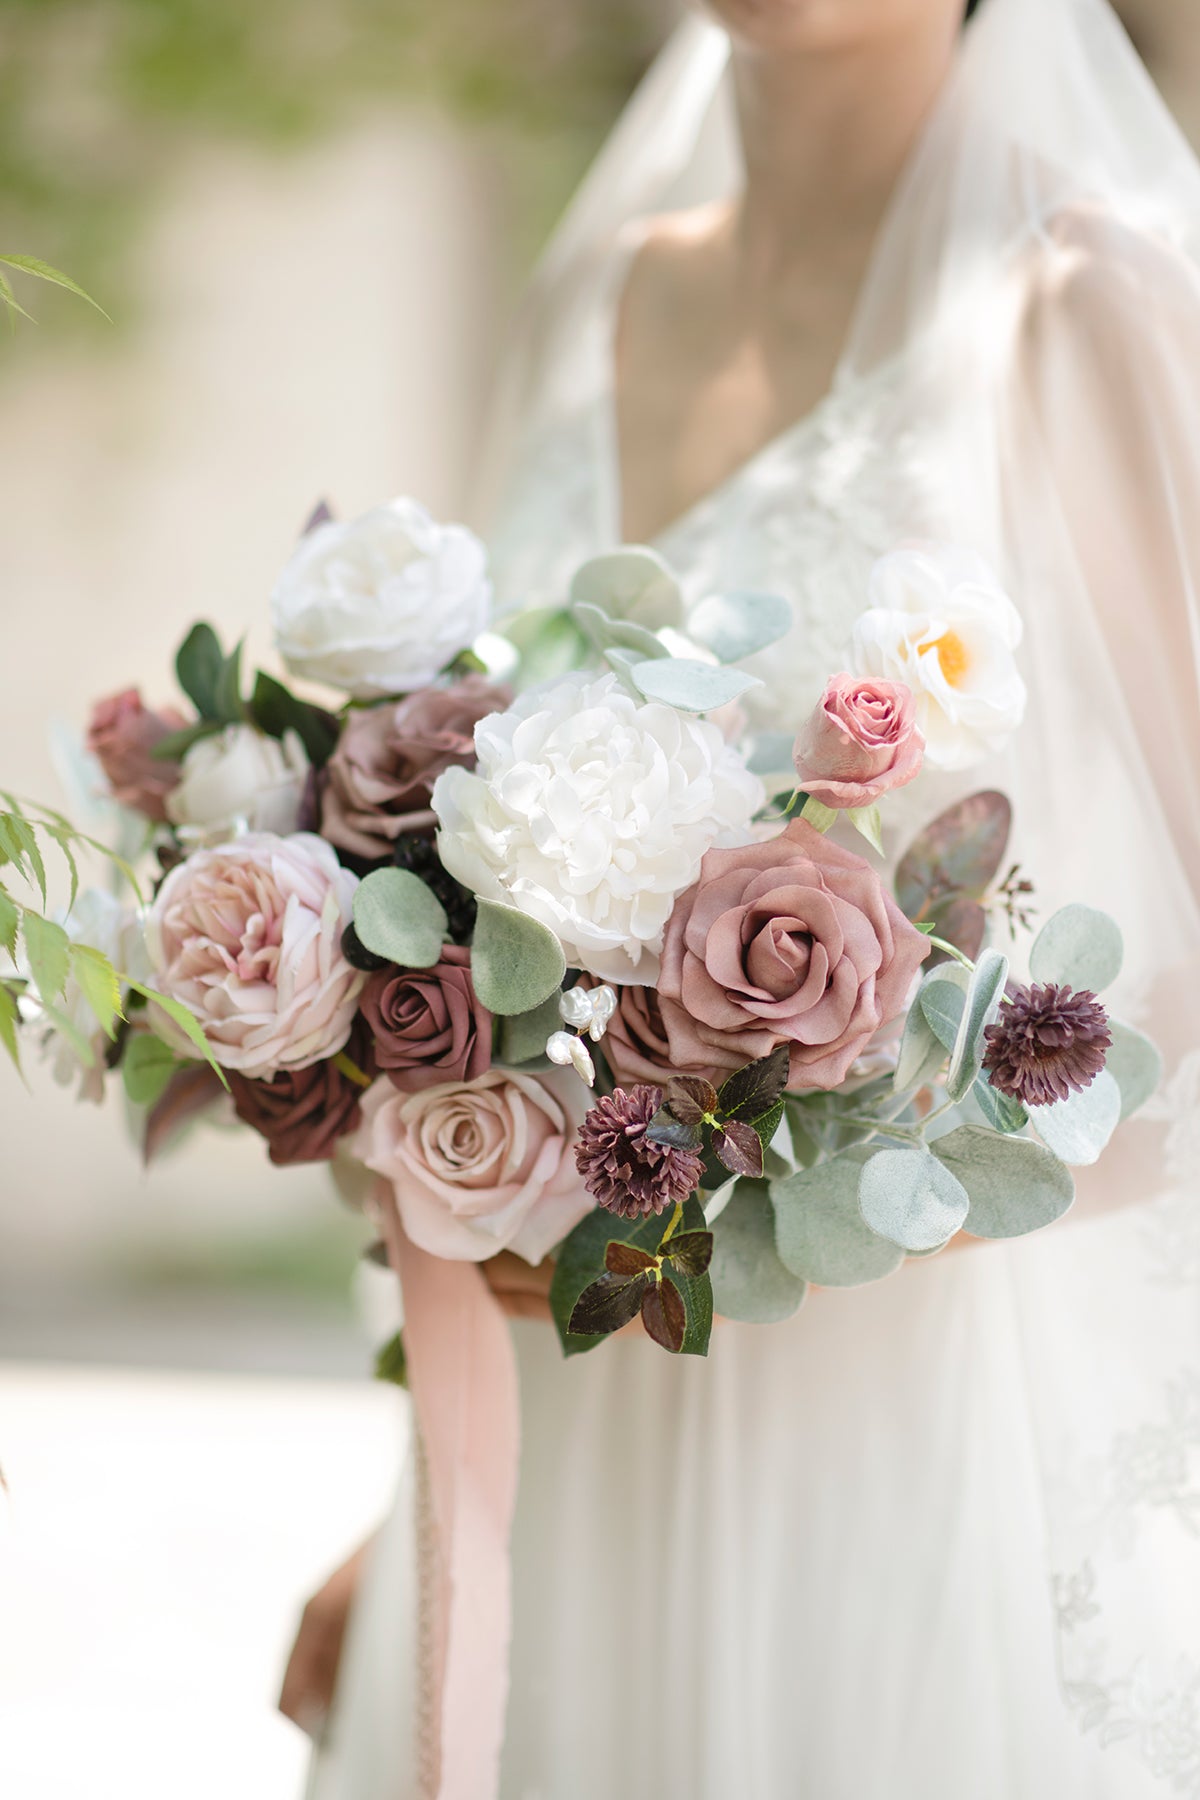 Mauve Dusty Rose Faux Foam Bridal Wedding Bouquet Accessories